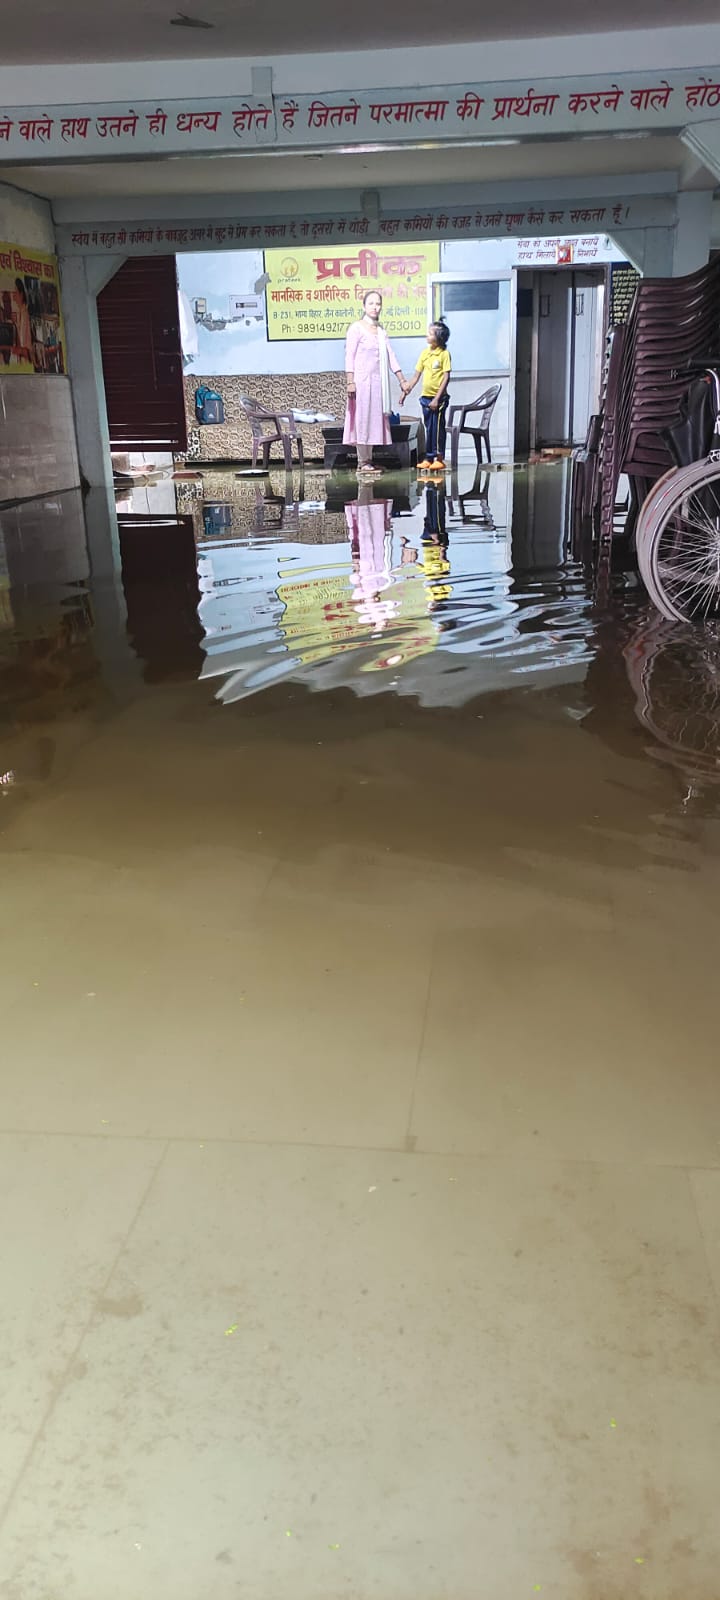 Delhi: मुंका के स्पेशल स्कूल में घुसा बाढ़ का पानी